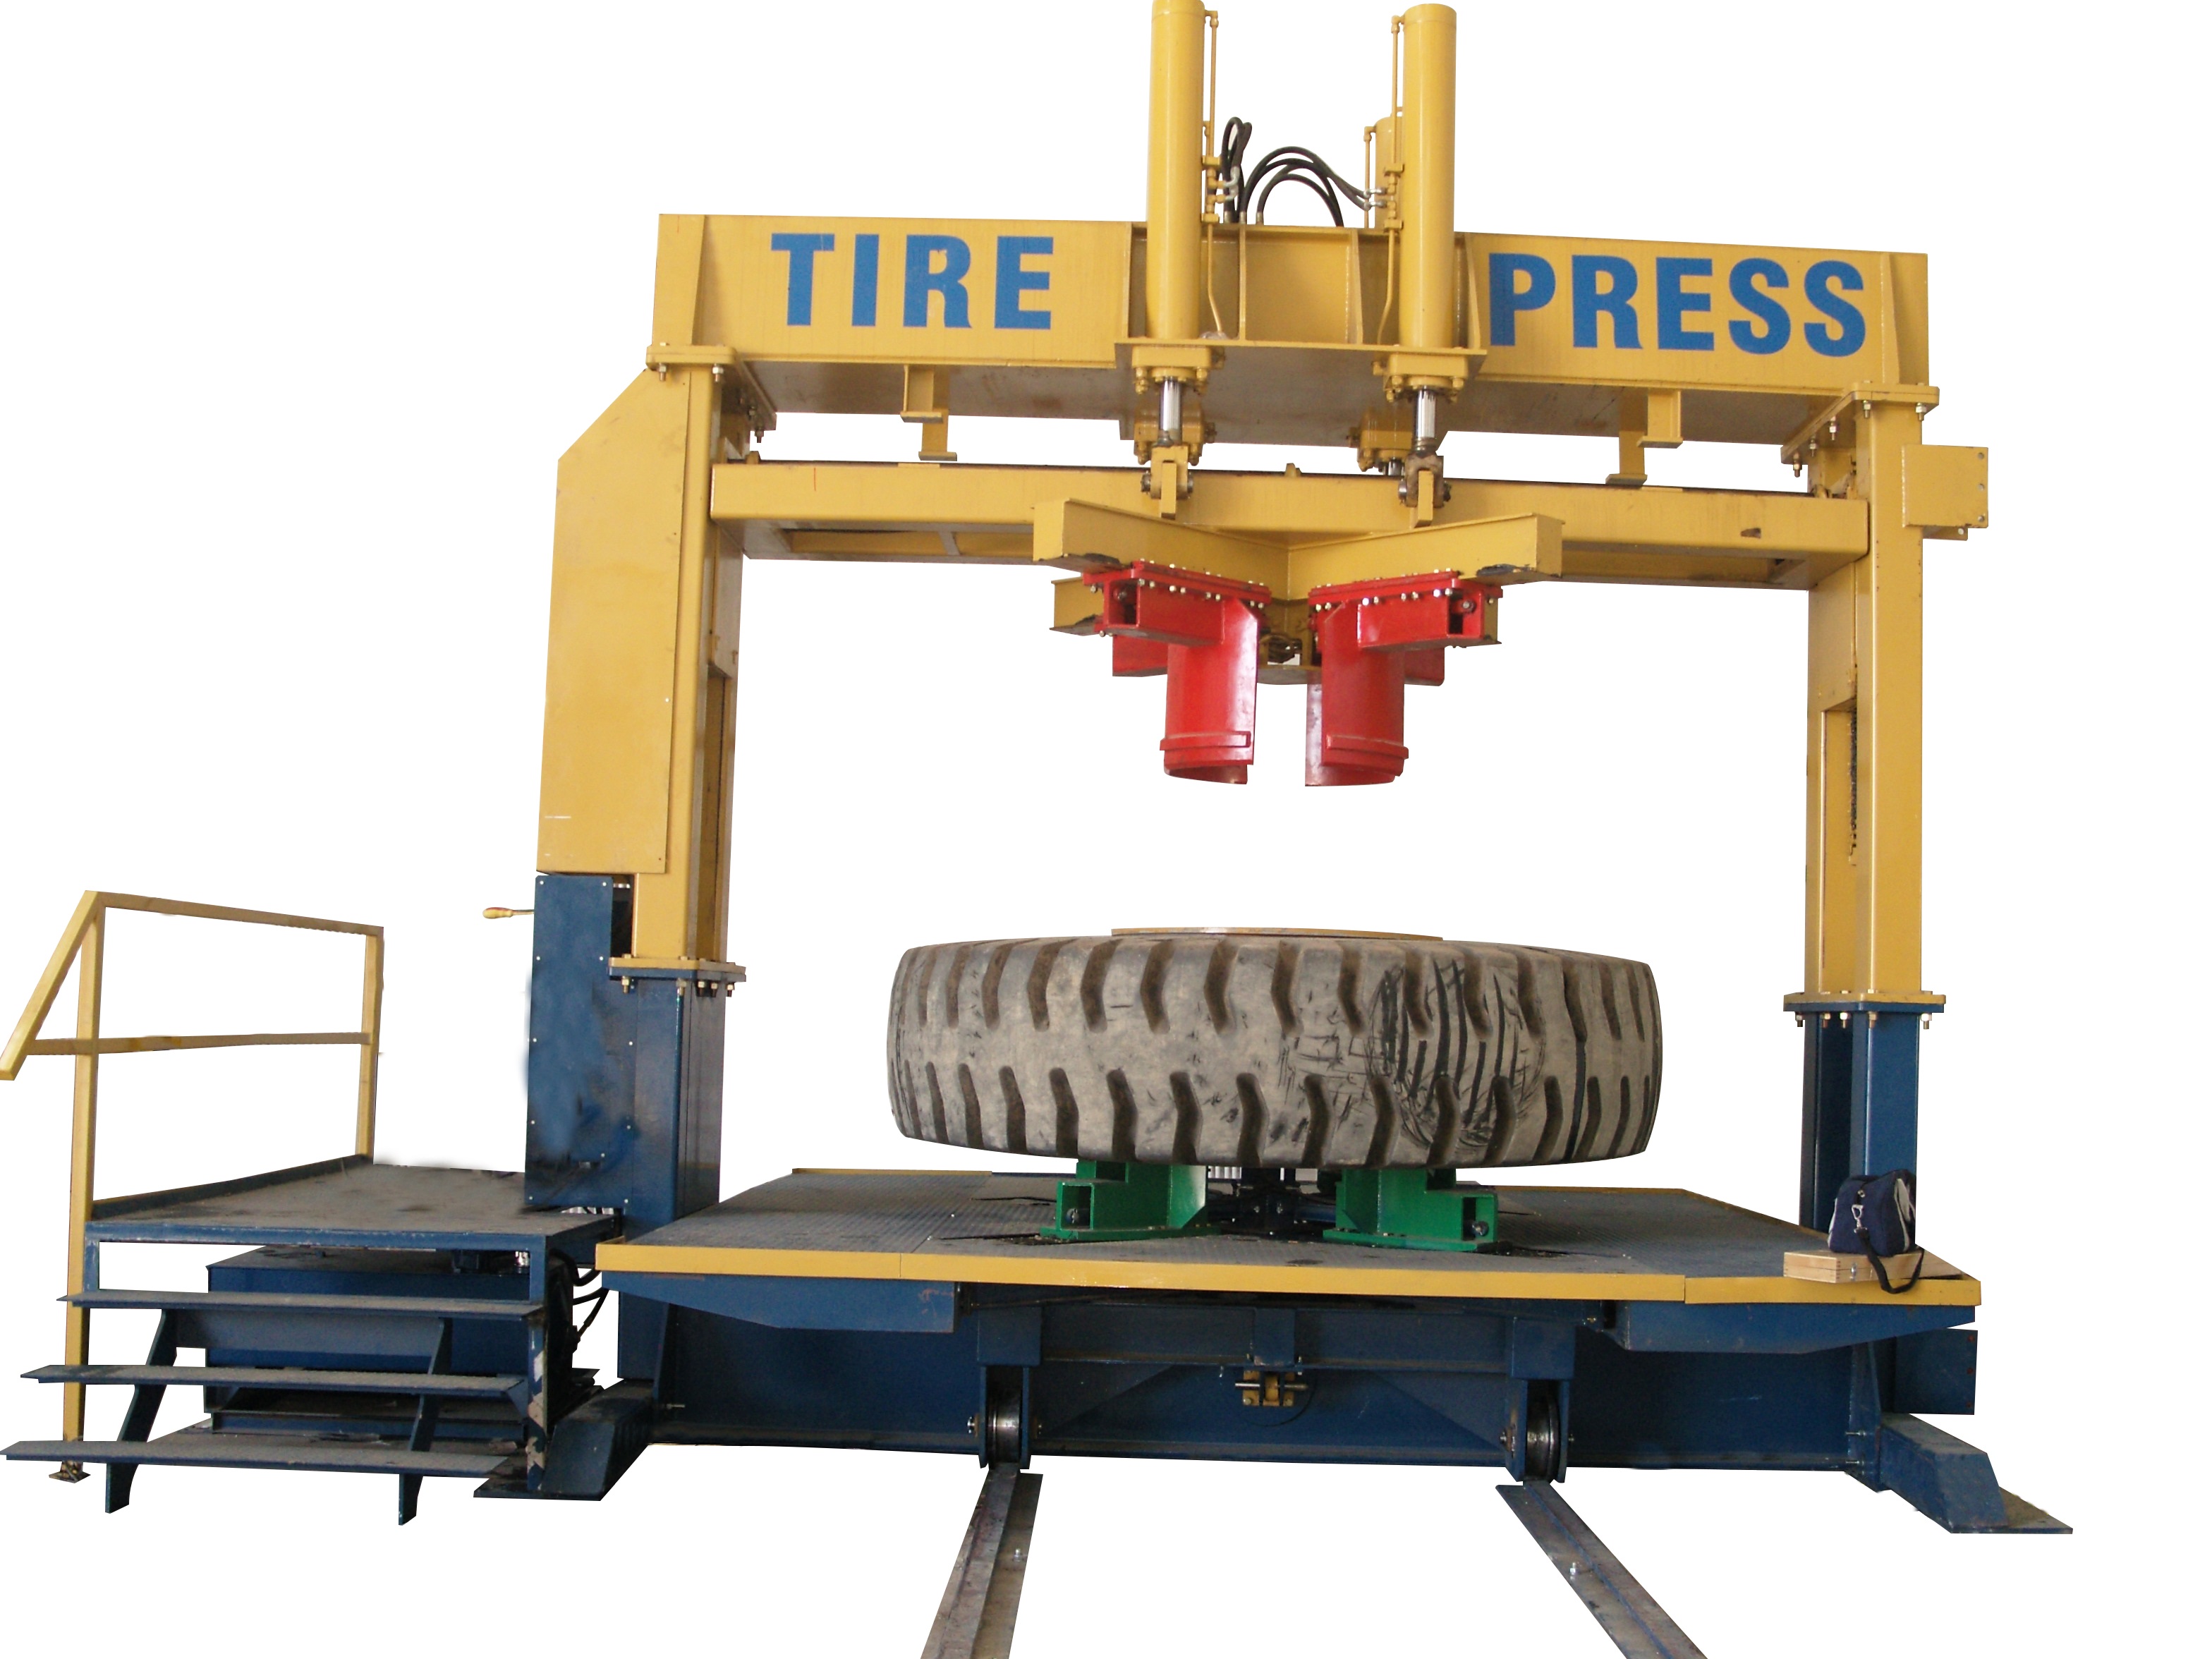 Tire Press